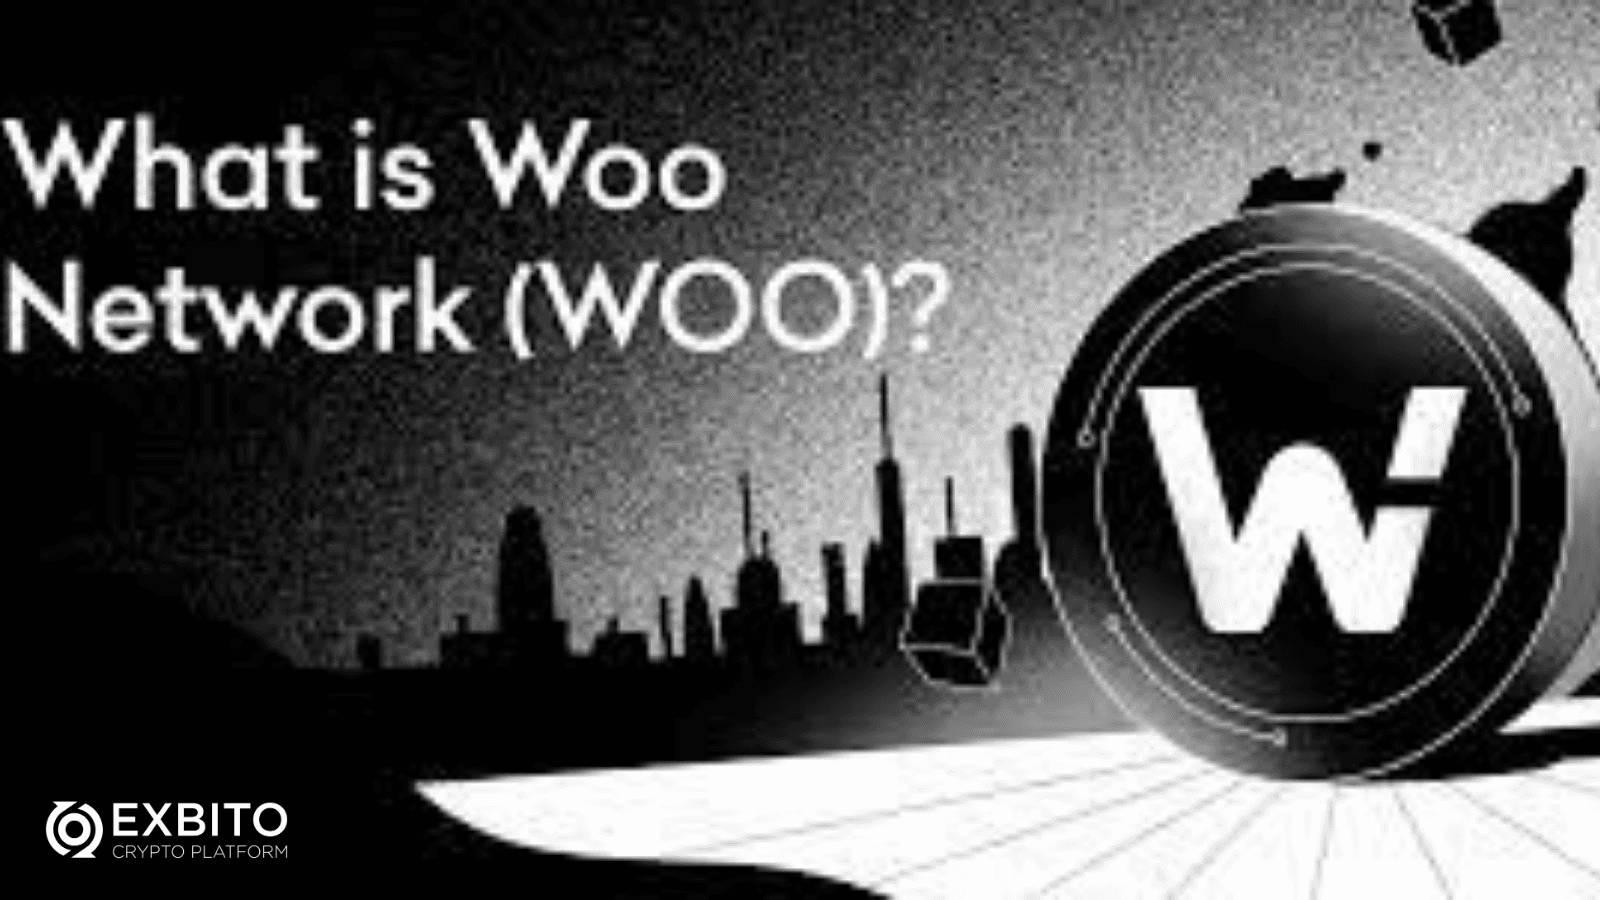 وو نتورک (WOO Network) چیست؟